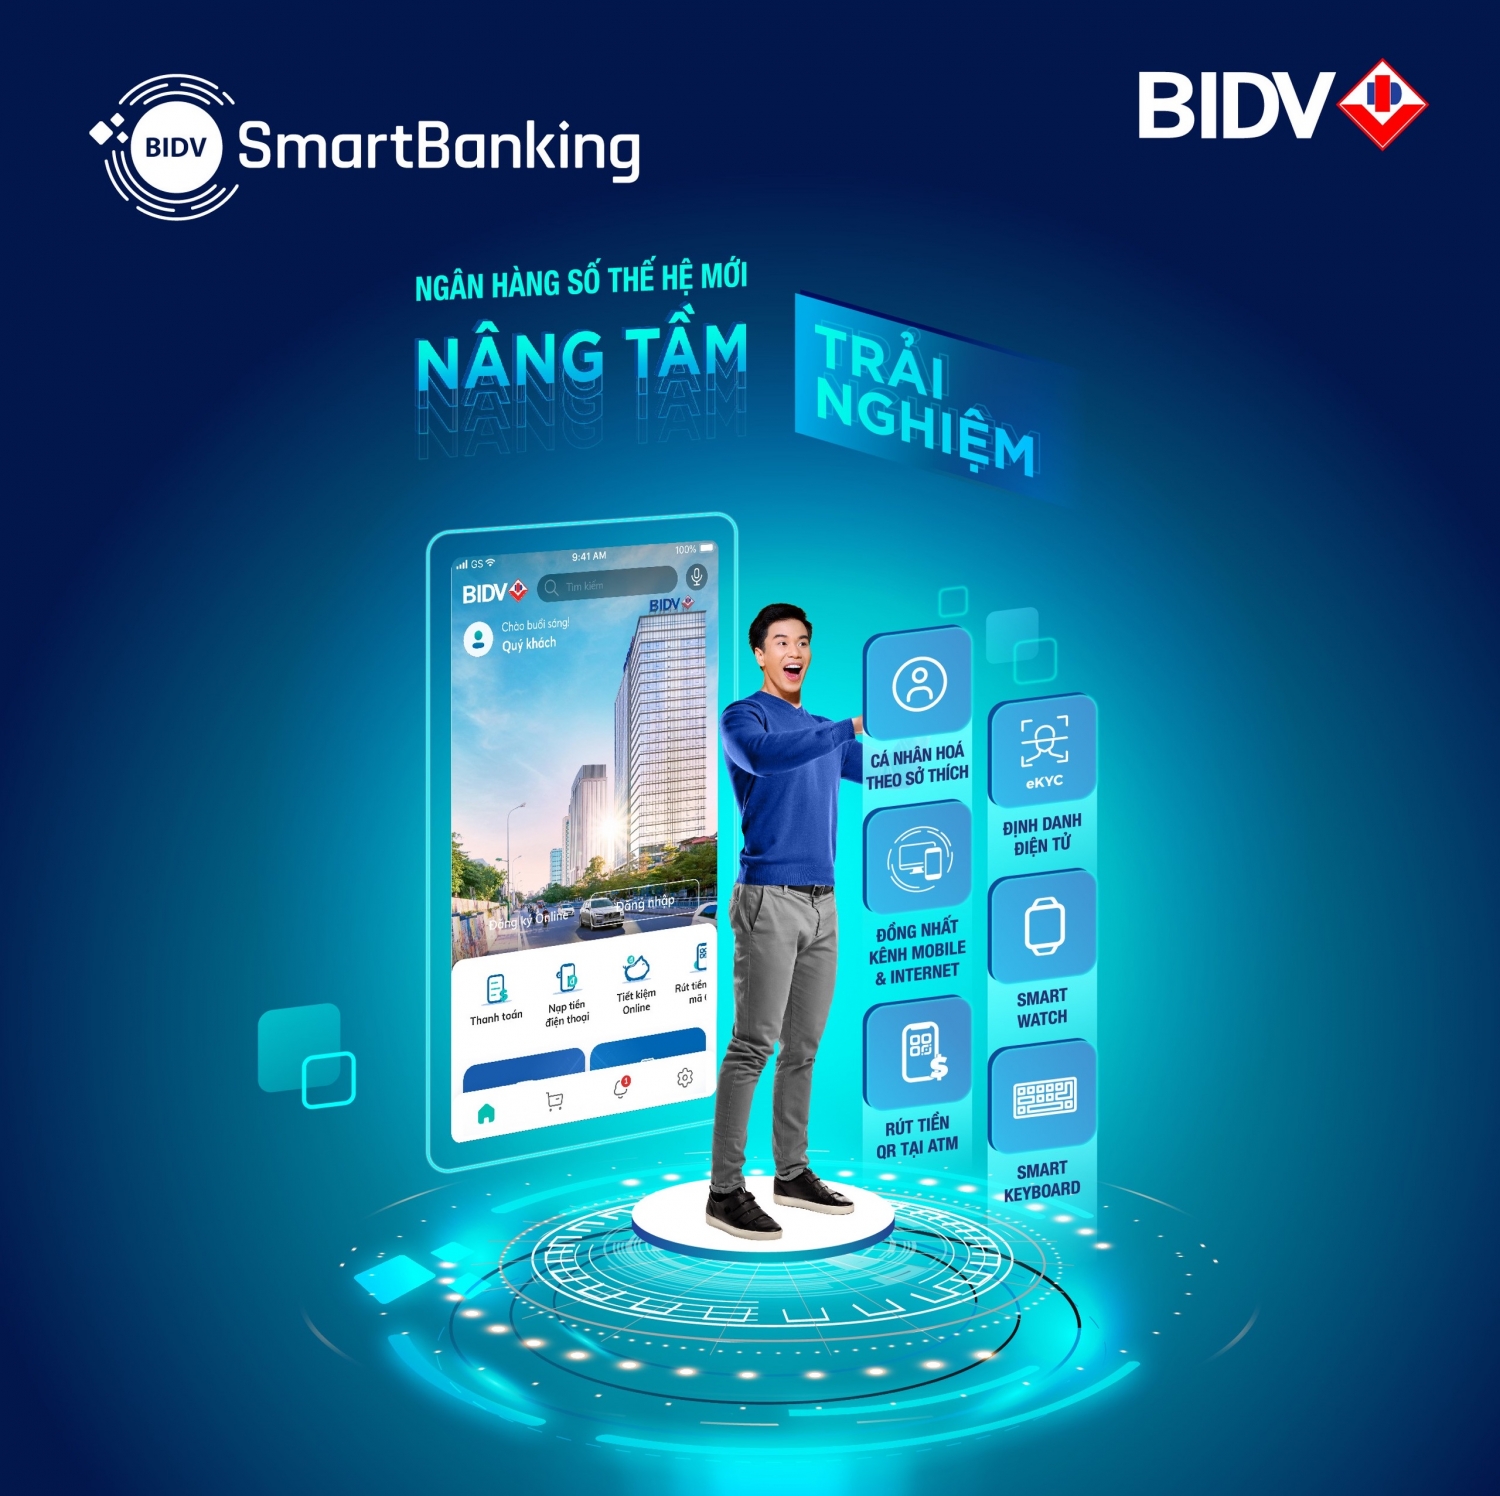 BIDV ra mắt SmartBanking thế hệ mới, khẳng định vị thế ngân hàng số dẫn đầu